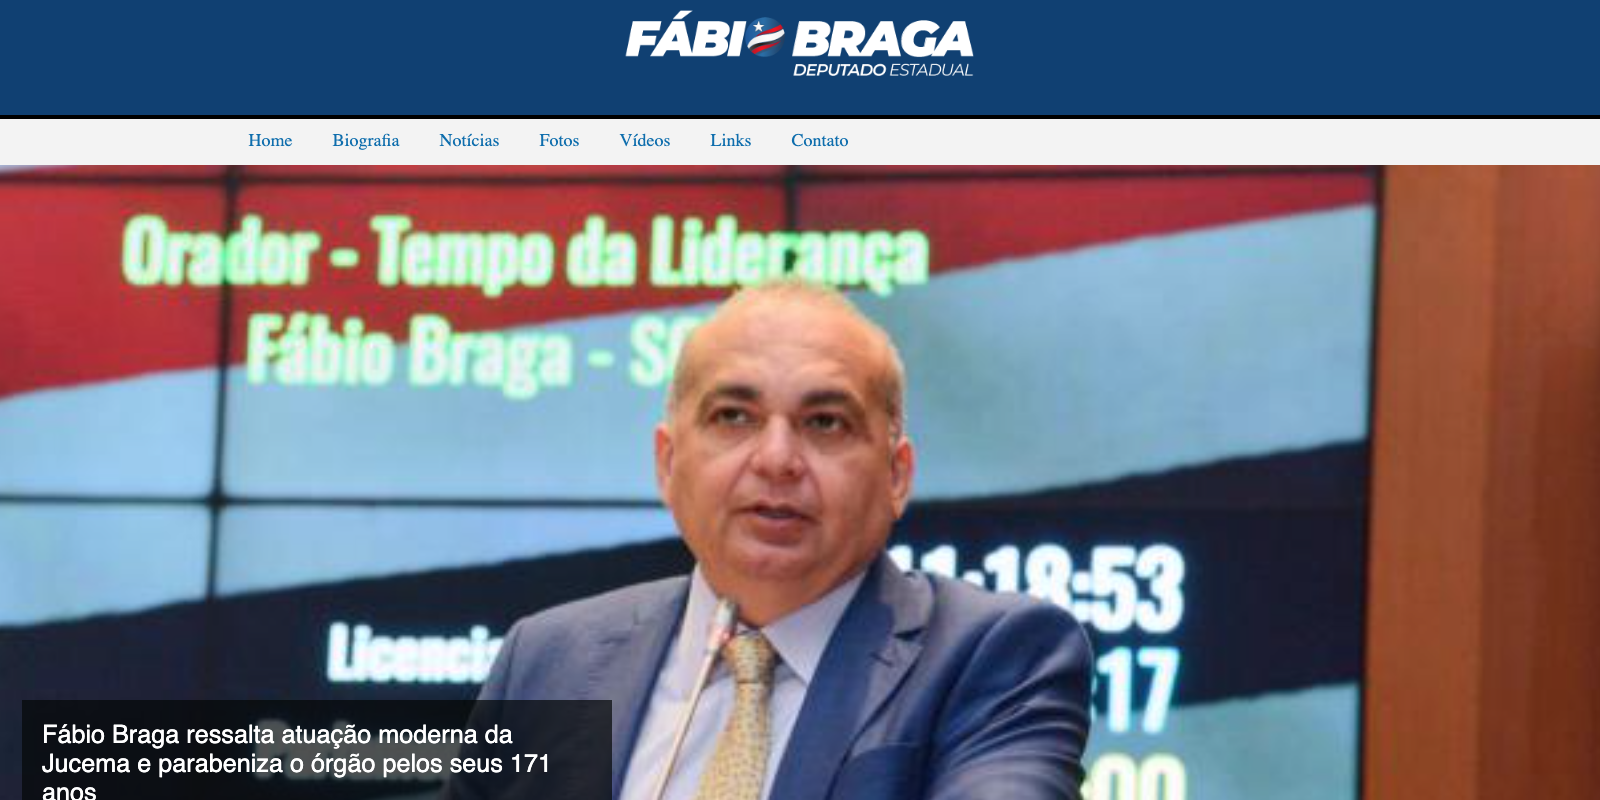 Portifolio Fabio Braga